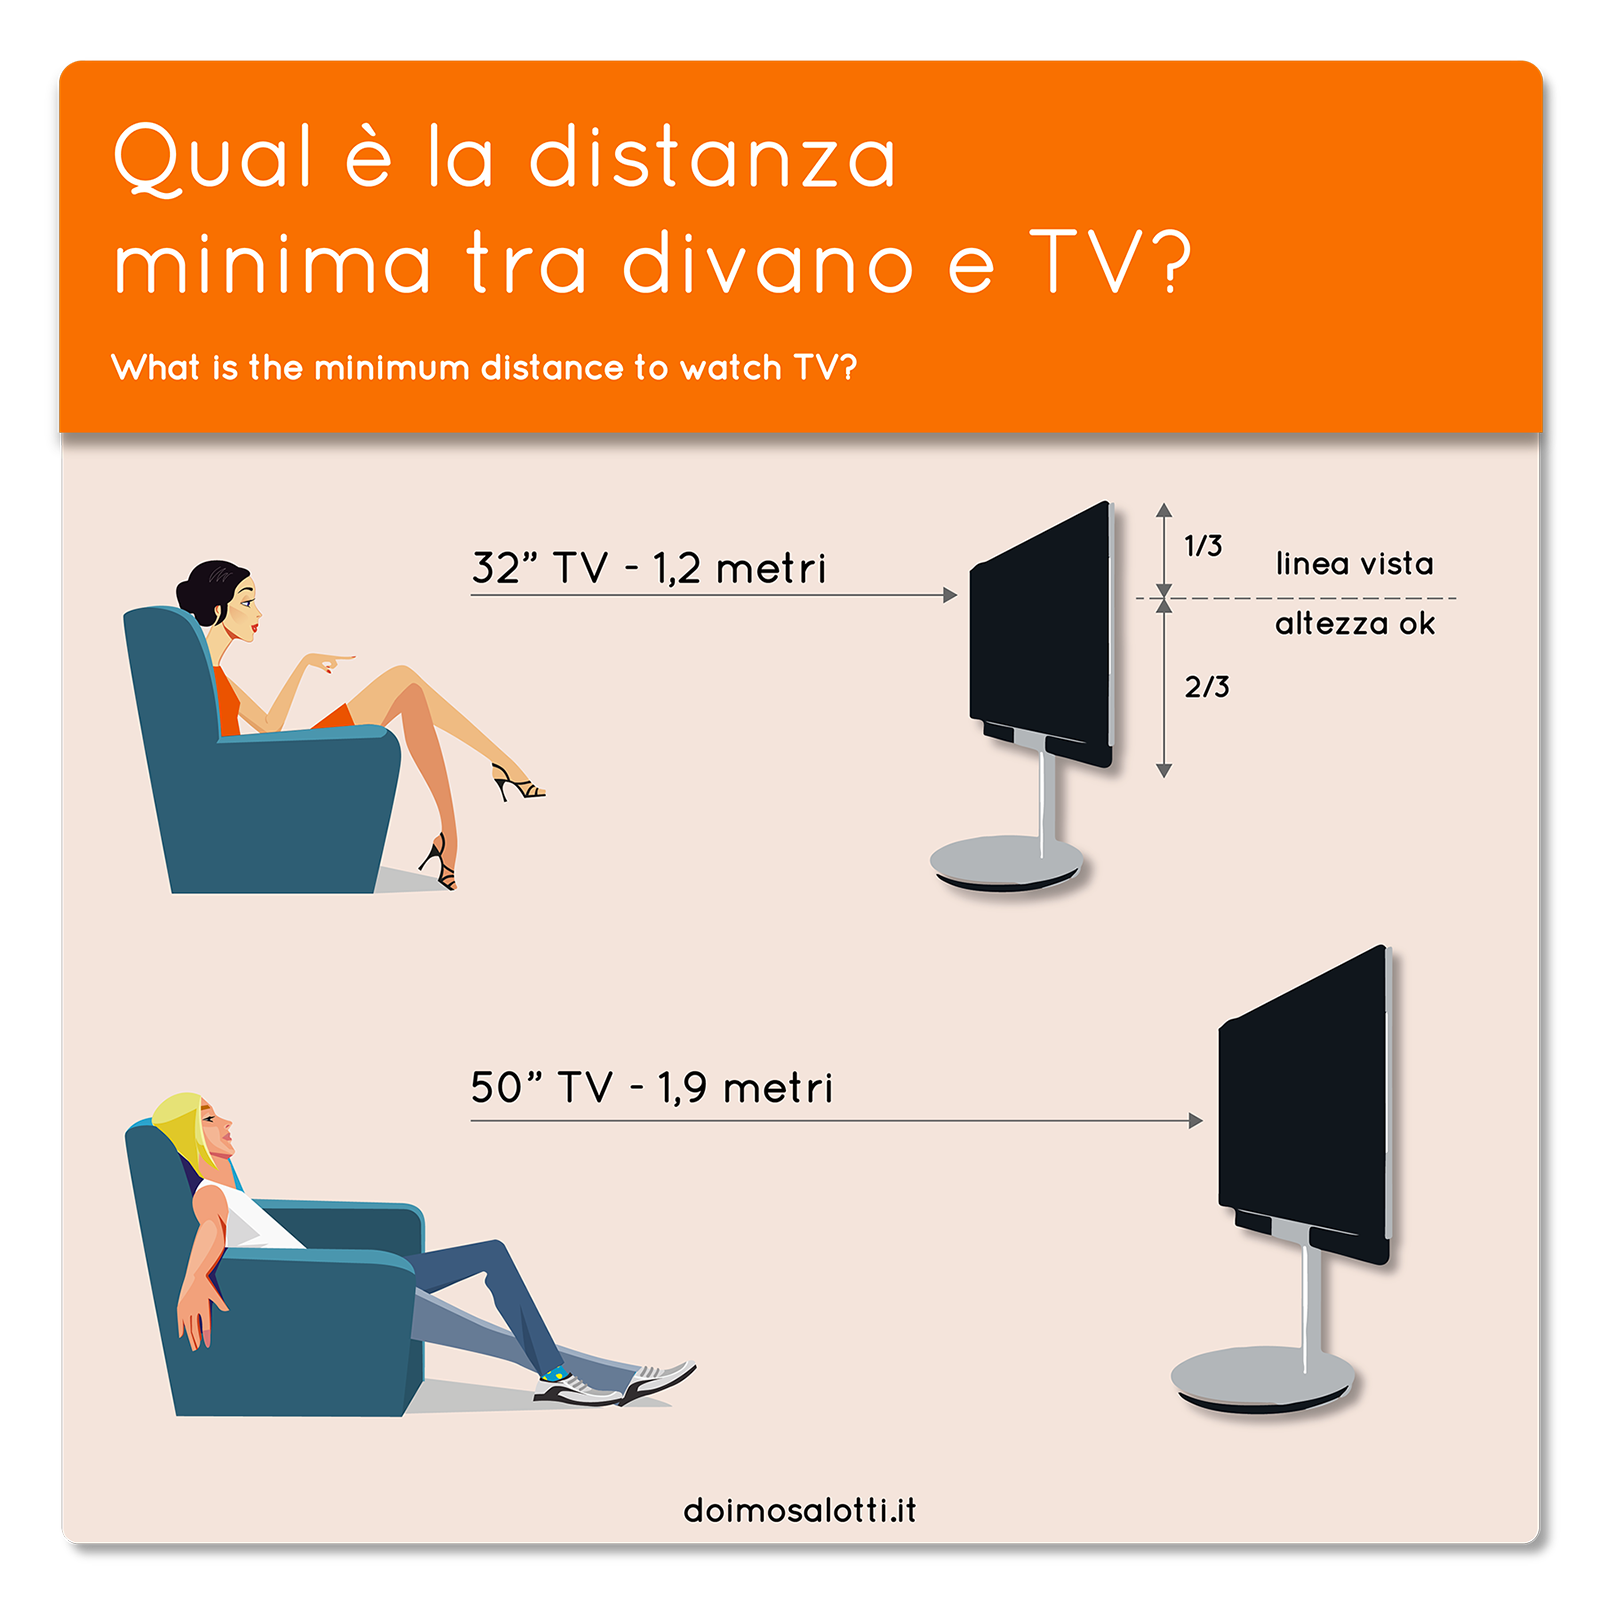 Расстояние от телевизора до стены. Размер от телевизора до дивана. Высота телевизора. Расстояние для просмотра телевизора. Размер от дивана до ТВ.